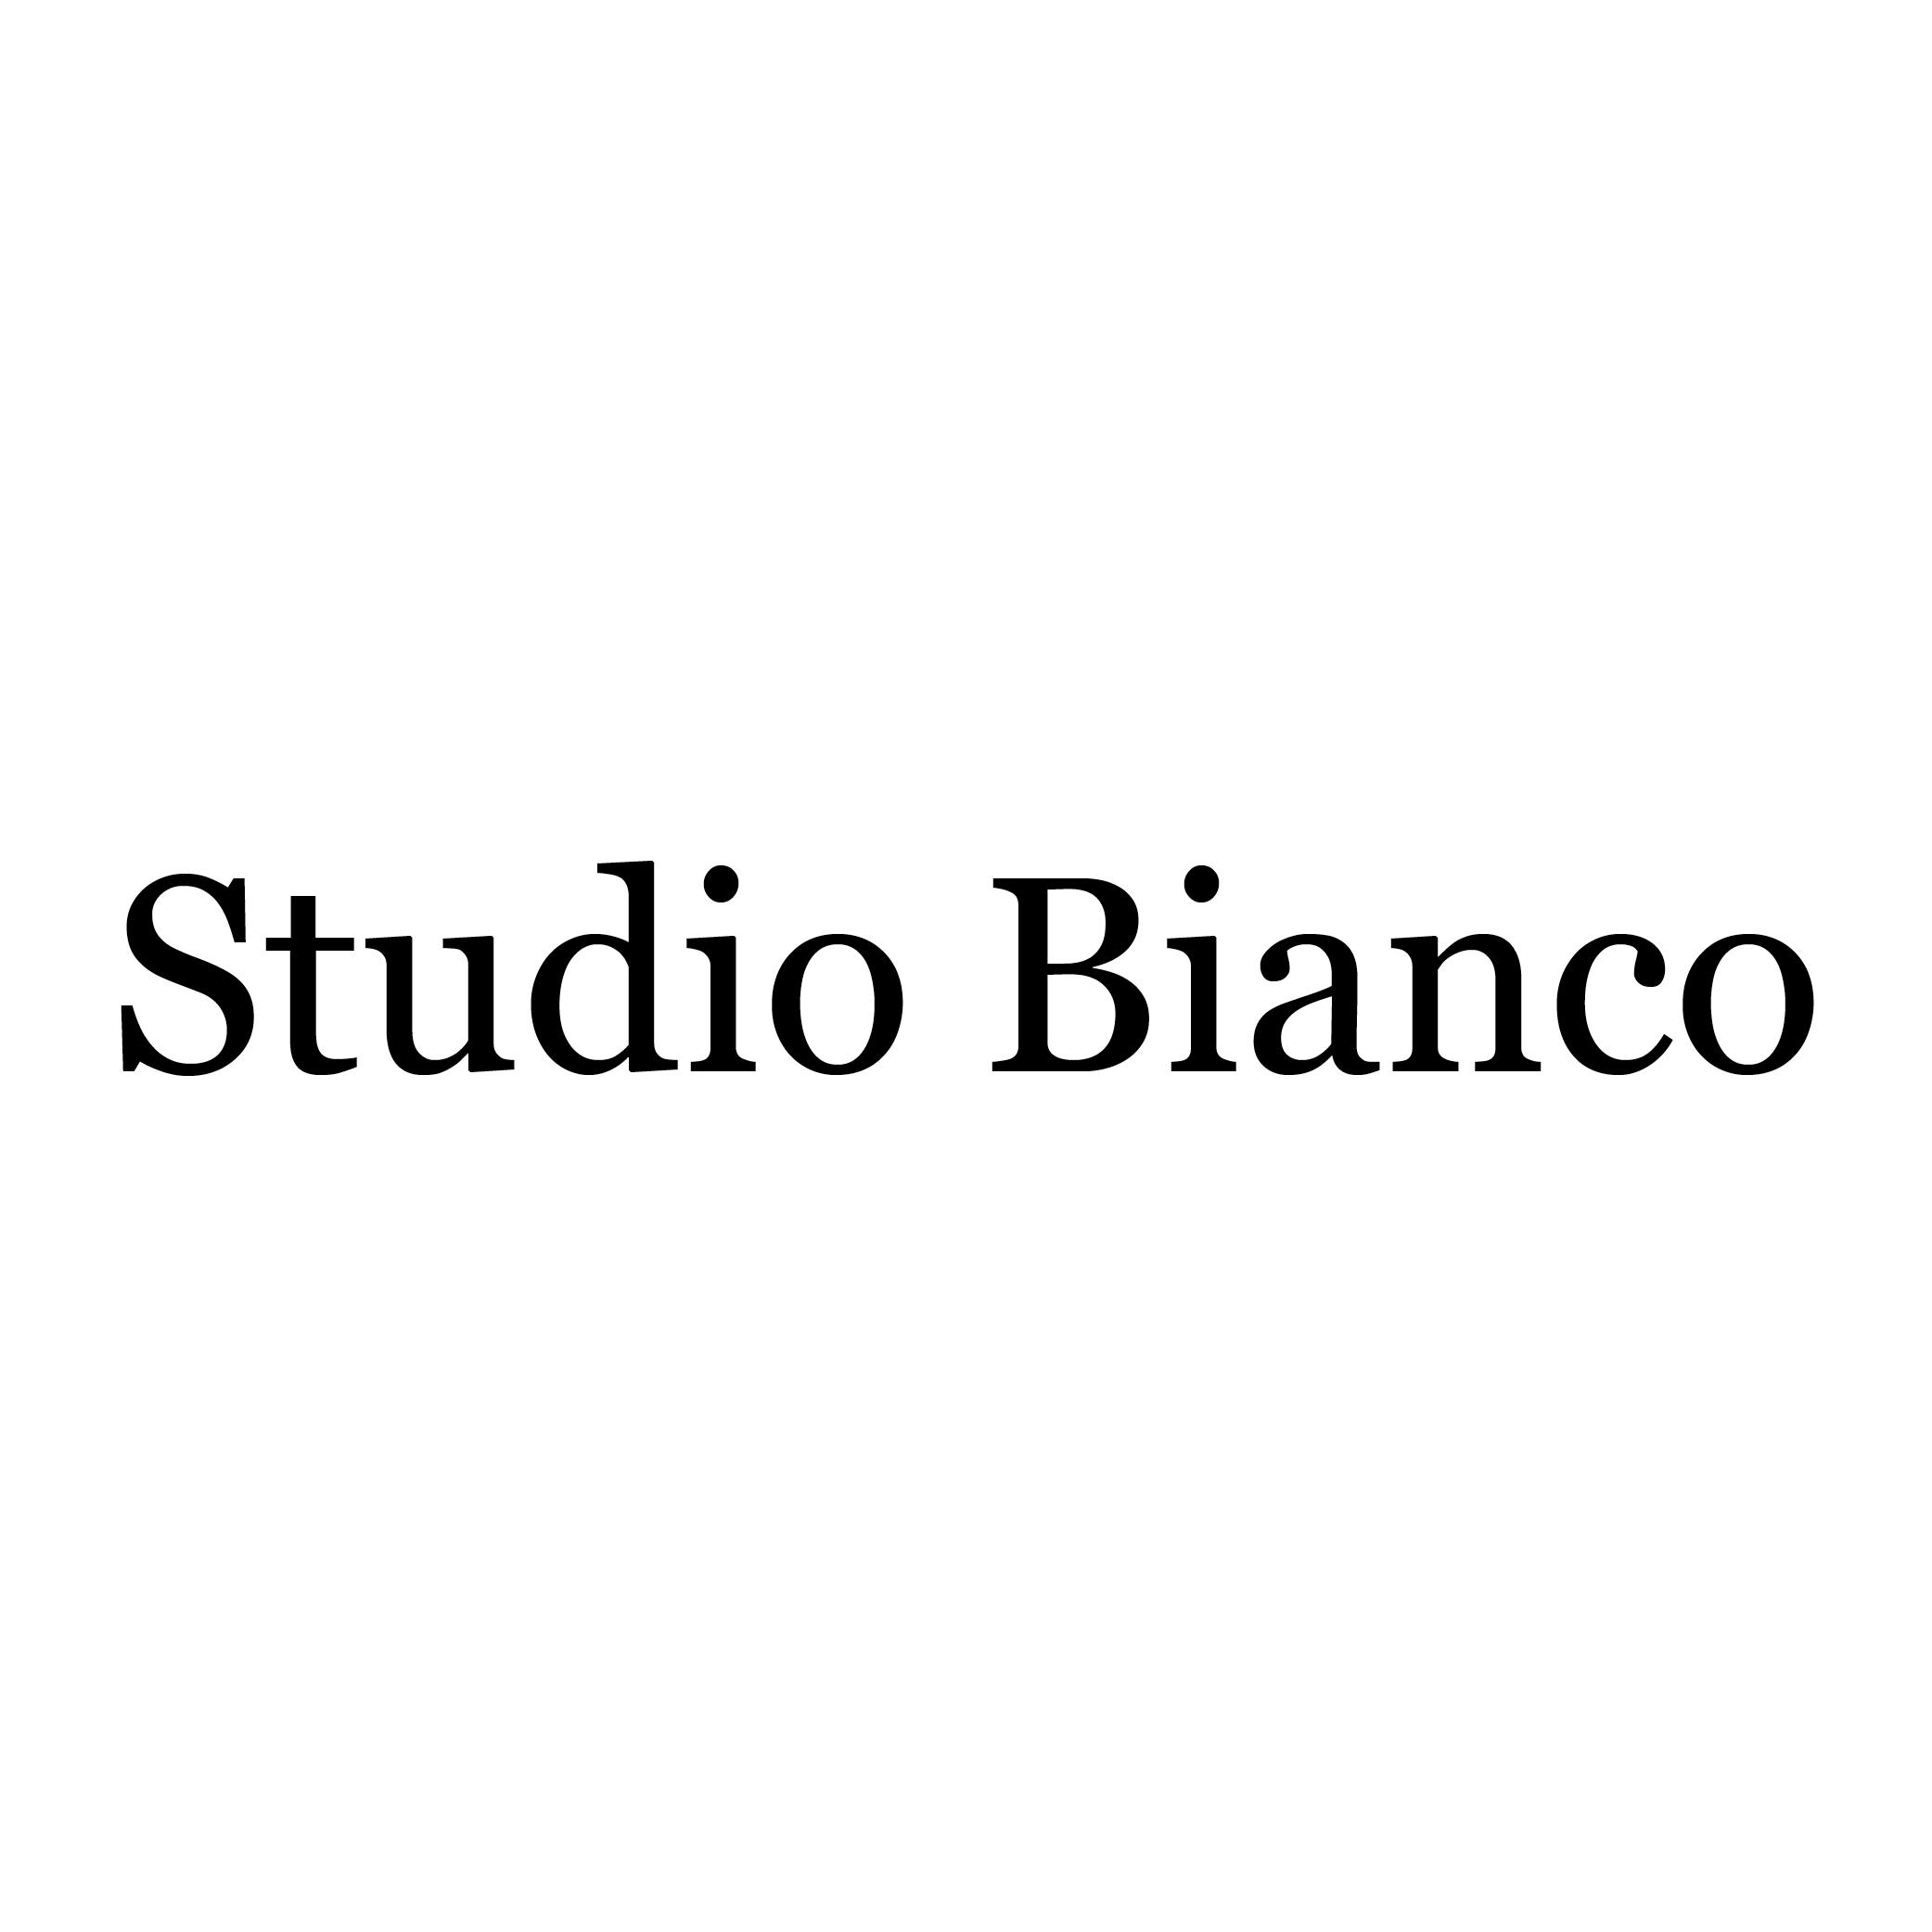 Studio Bianco